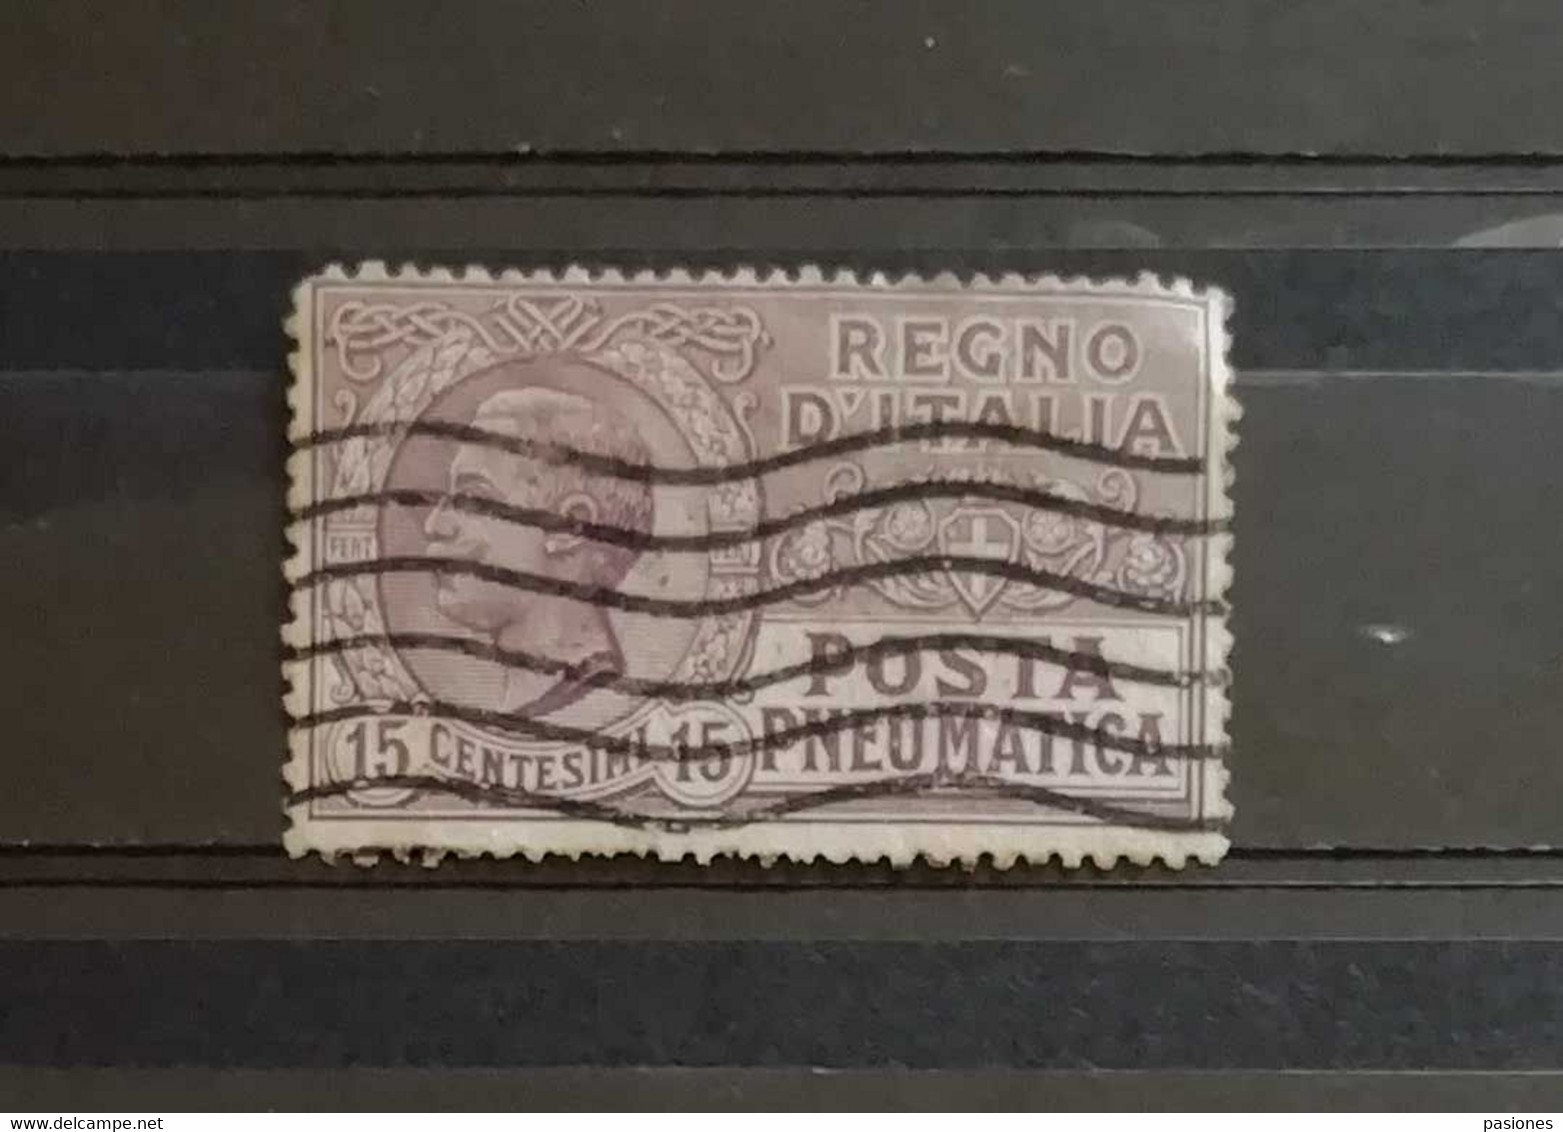 Regno D'Italia Vittorio Emanuele III 1913-23 N. 2 Posta Pneumatica Cent. 15 Usato - Pneumatische Post